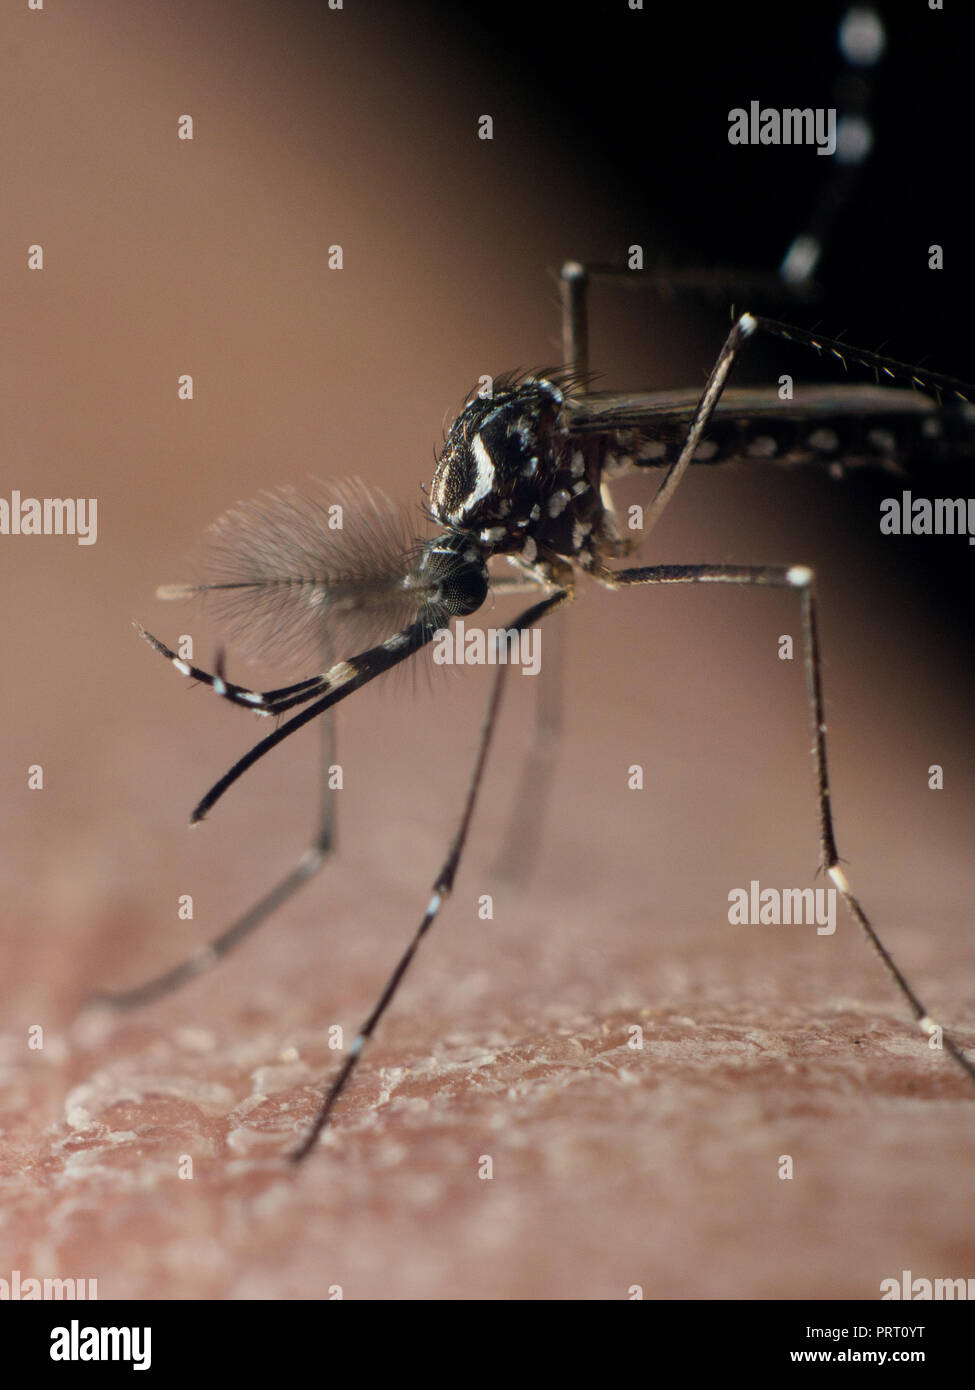 Foto verticale, vettore Aedes aegypti (mosquito da dengue) seduto sulla pelle umana. Vettore della febbre dengue, febbre gialla zika virus chikungunya e. Foto Stock